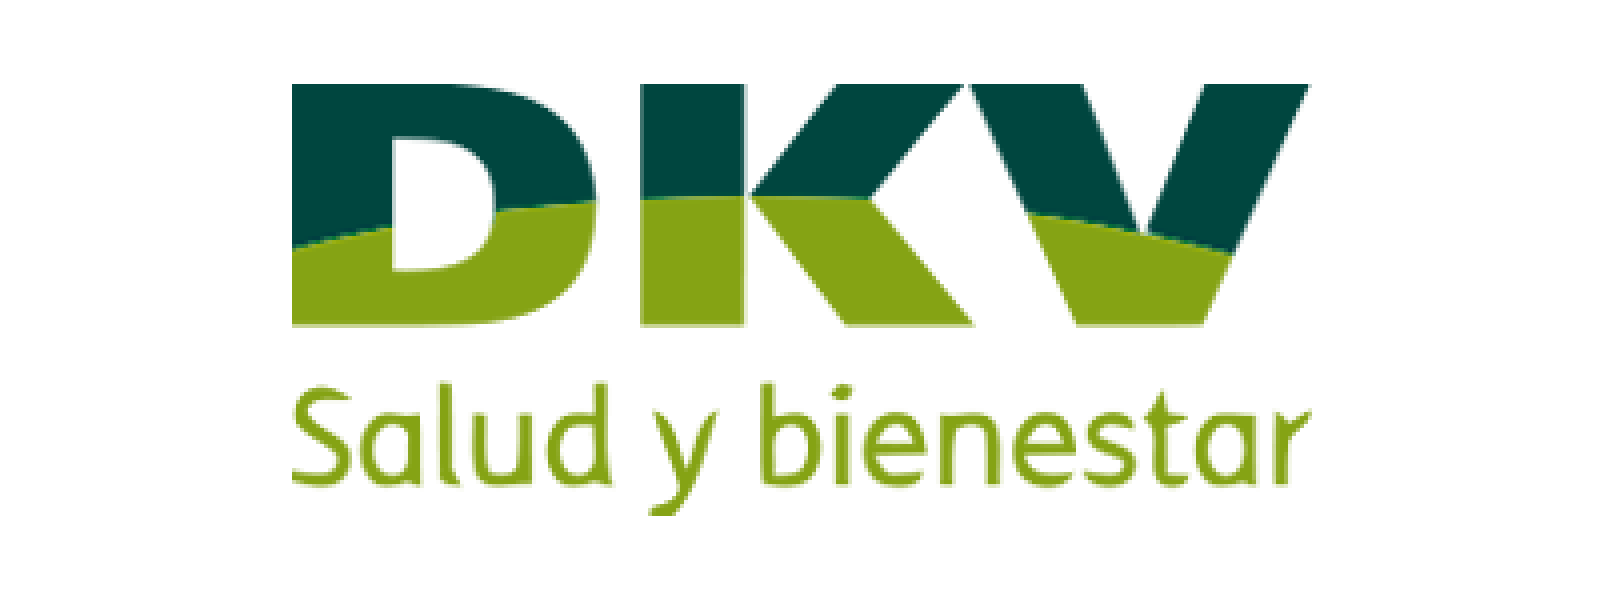 Logo de la compañía de seguros DKV.